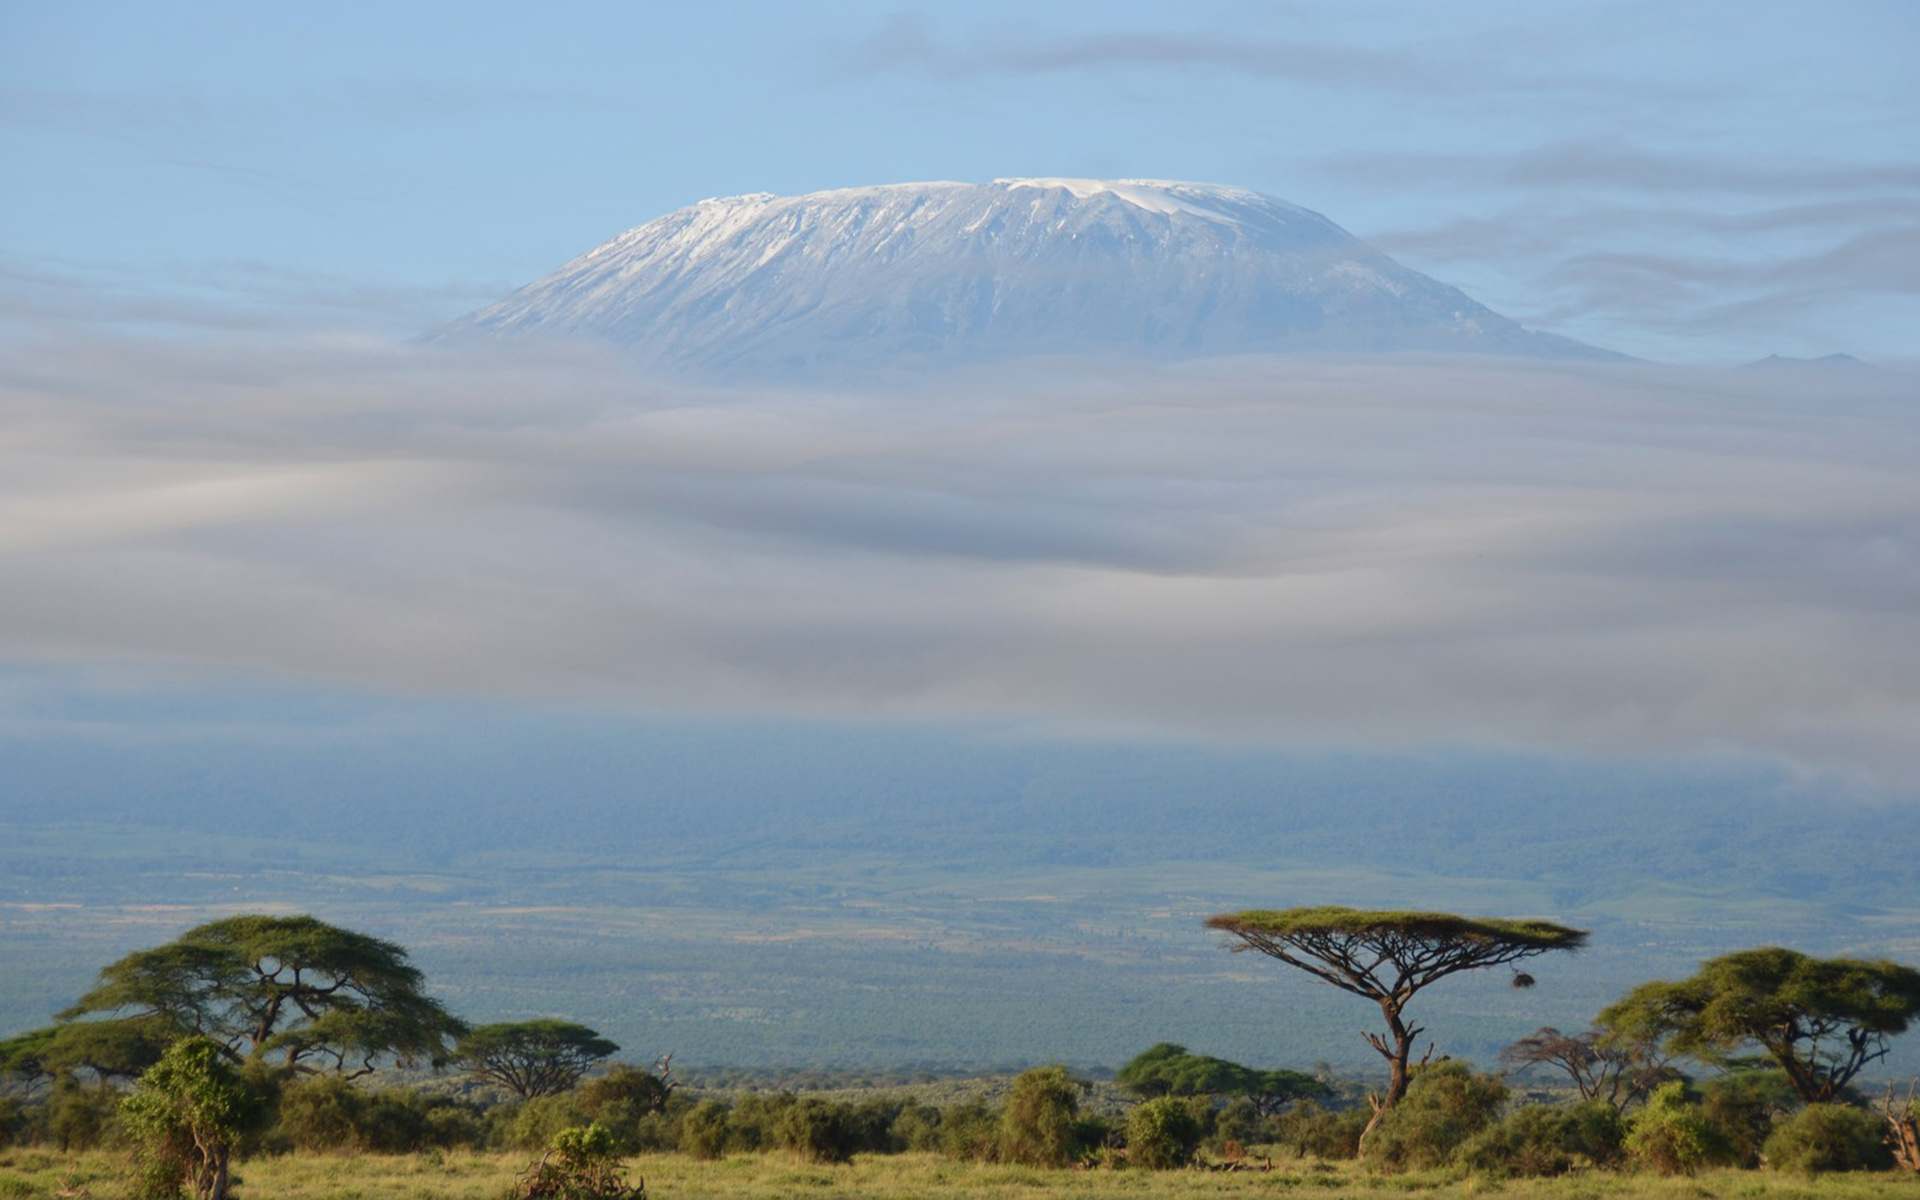 Популярные заставки и фоны Гора Килиманджаро на компьютер